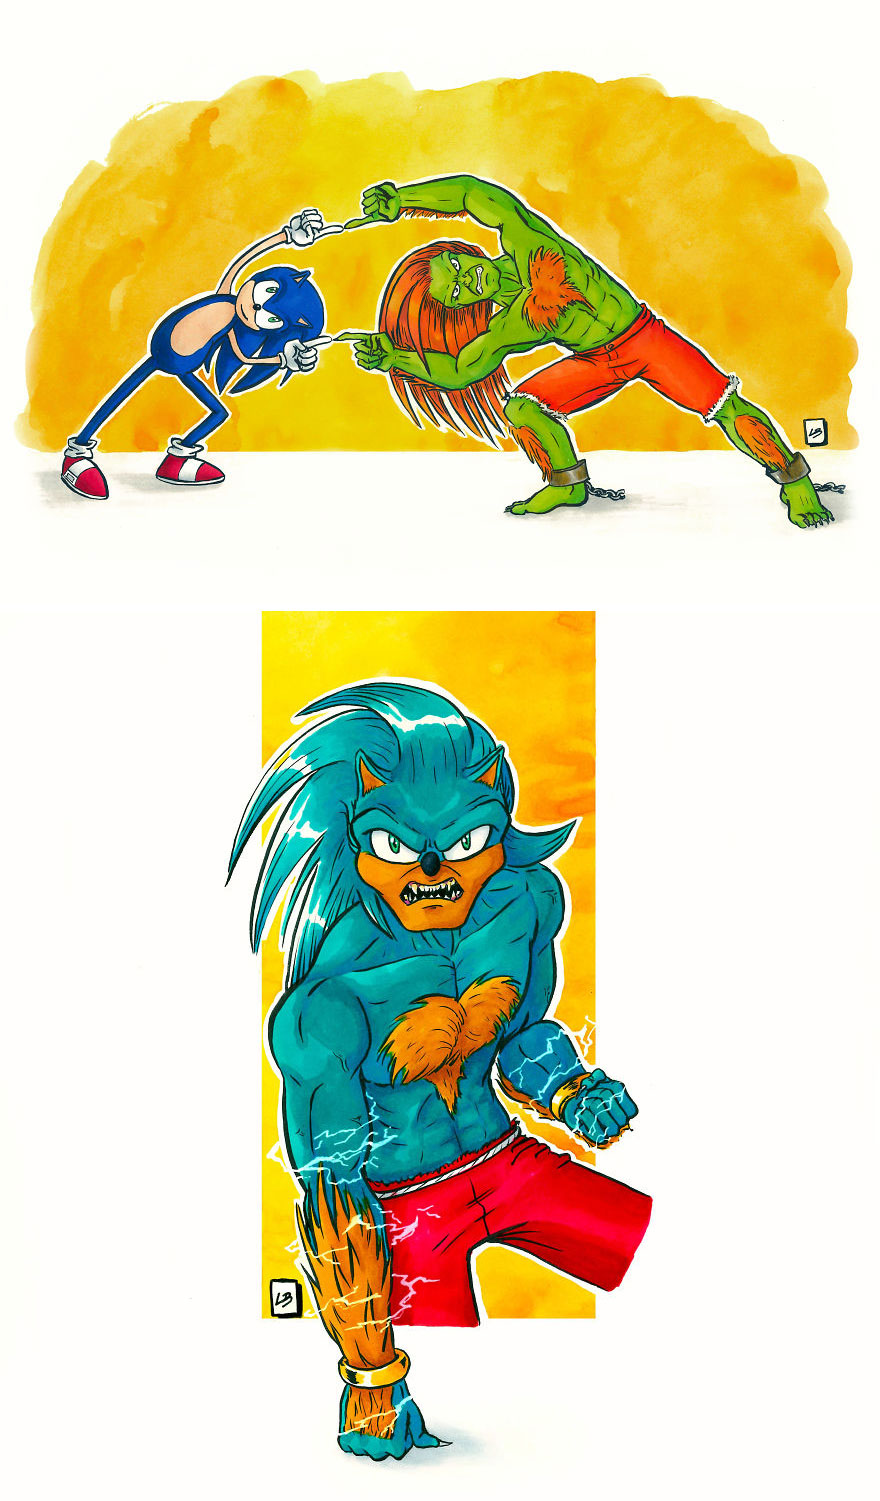 16張「人氣角色跨界合體」的趣萌插畫　網友大推「地球超人 x 鋼鐵人」